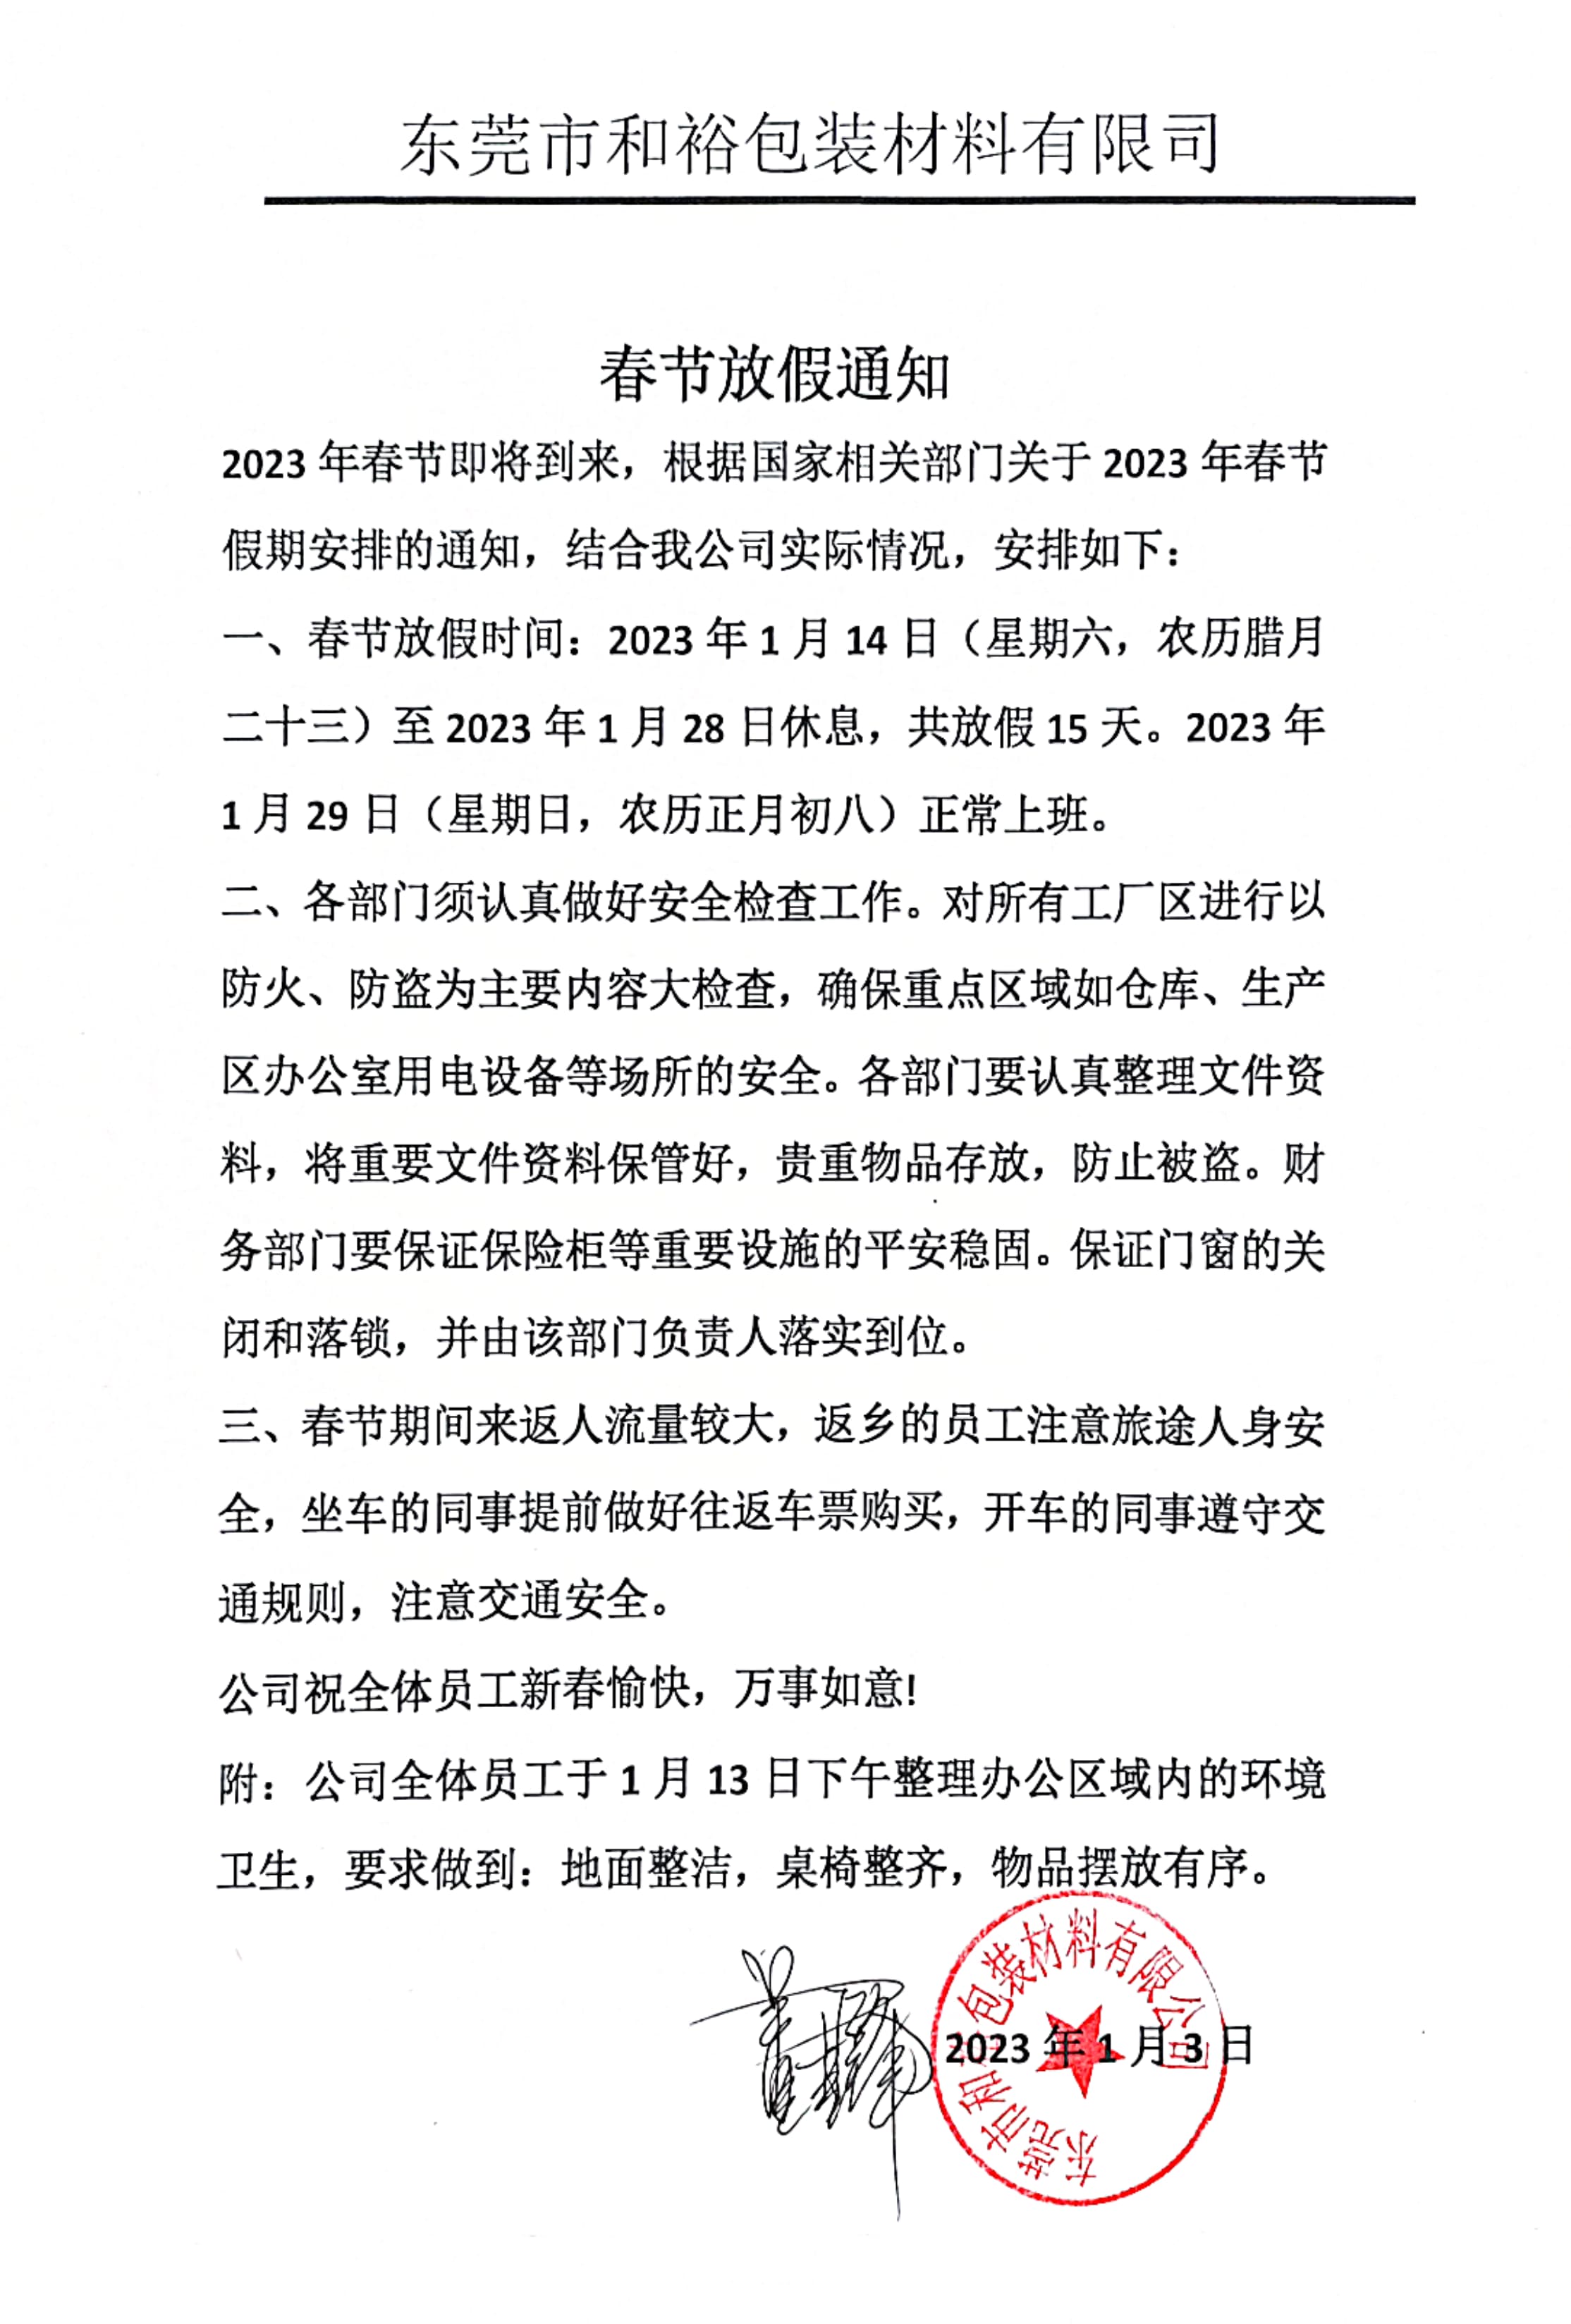 庆阳市2023年和裕包装春节放假通知